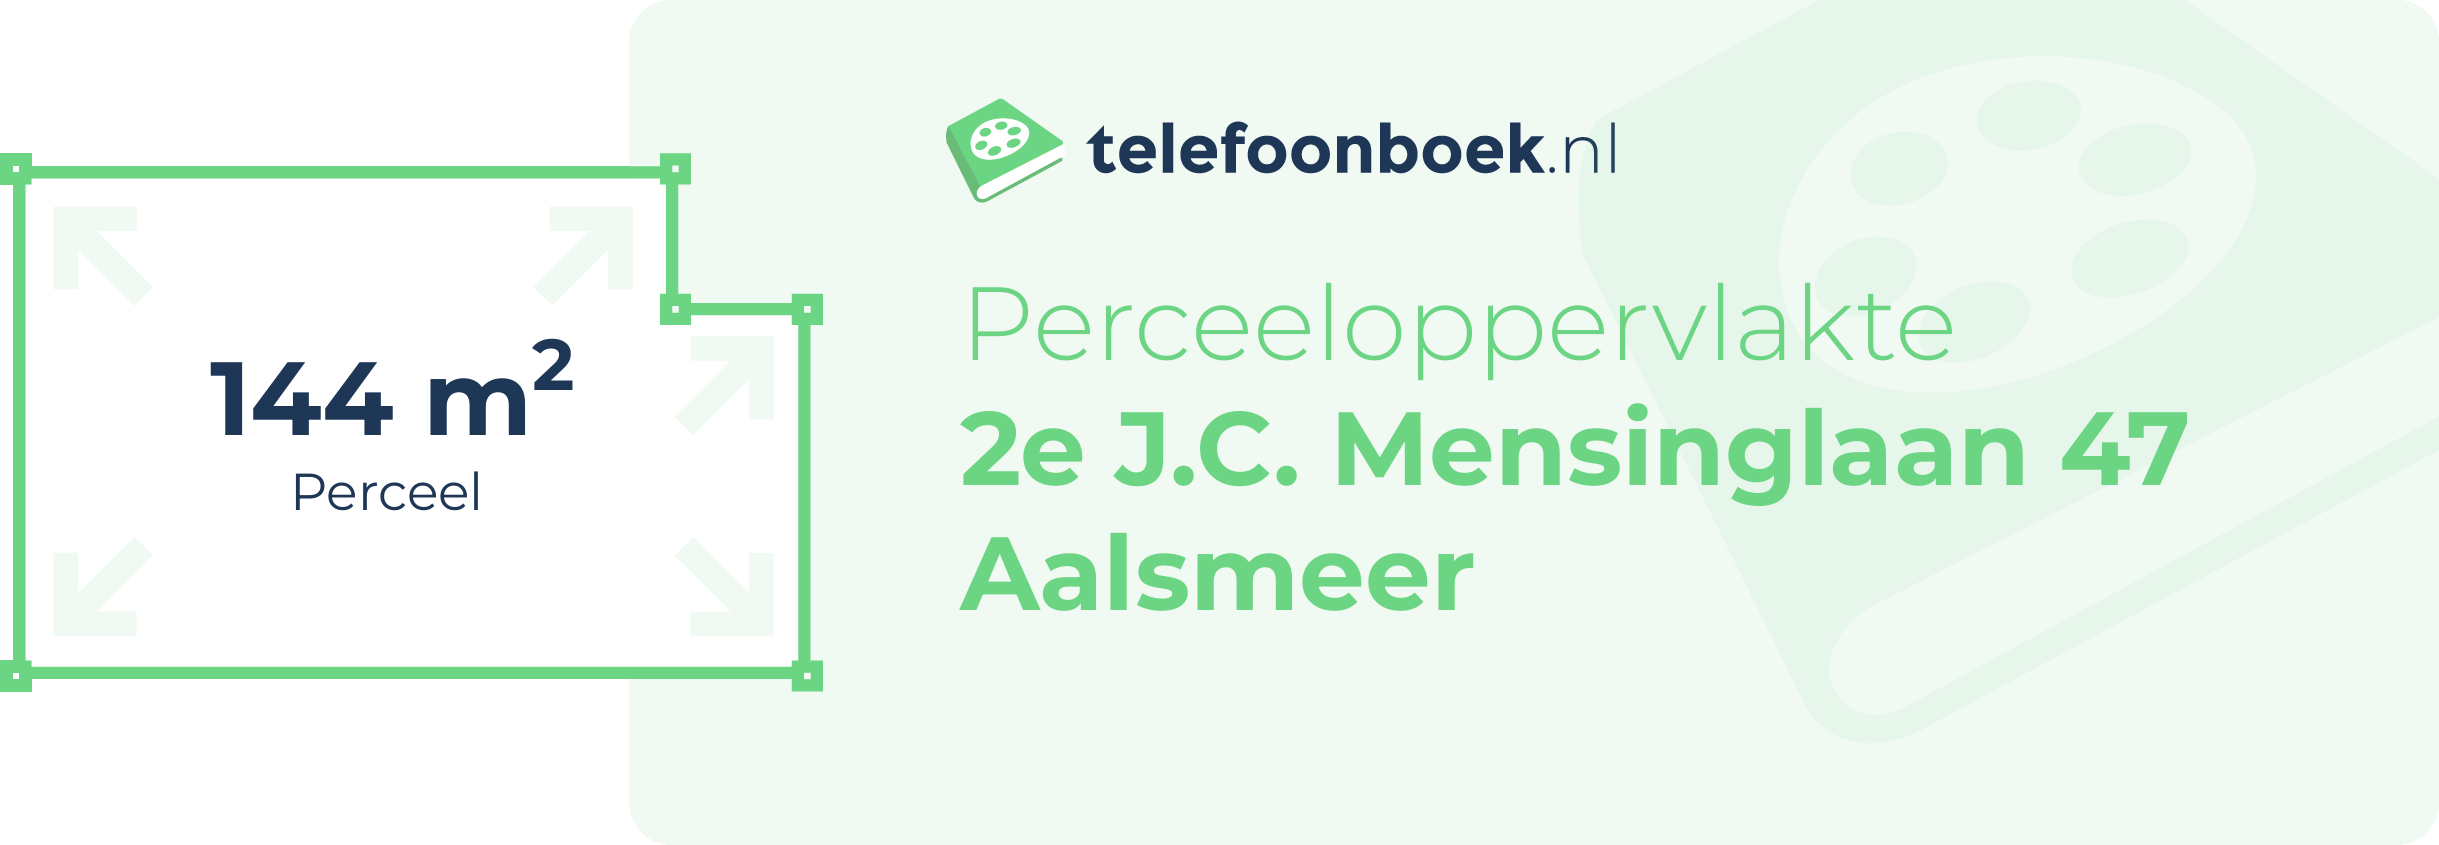 Perceeloppervlakte 2e J.C. Mensinglaan 47 Aalsmeer